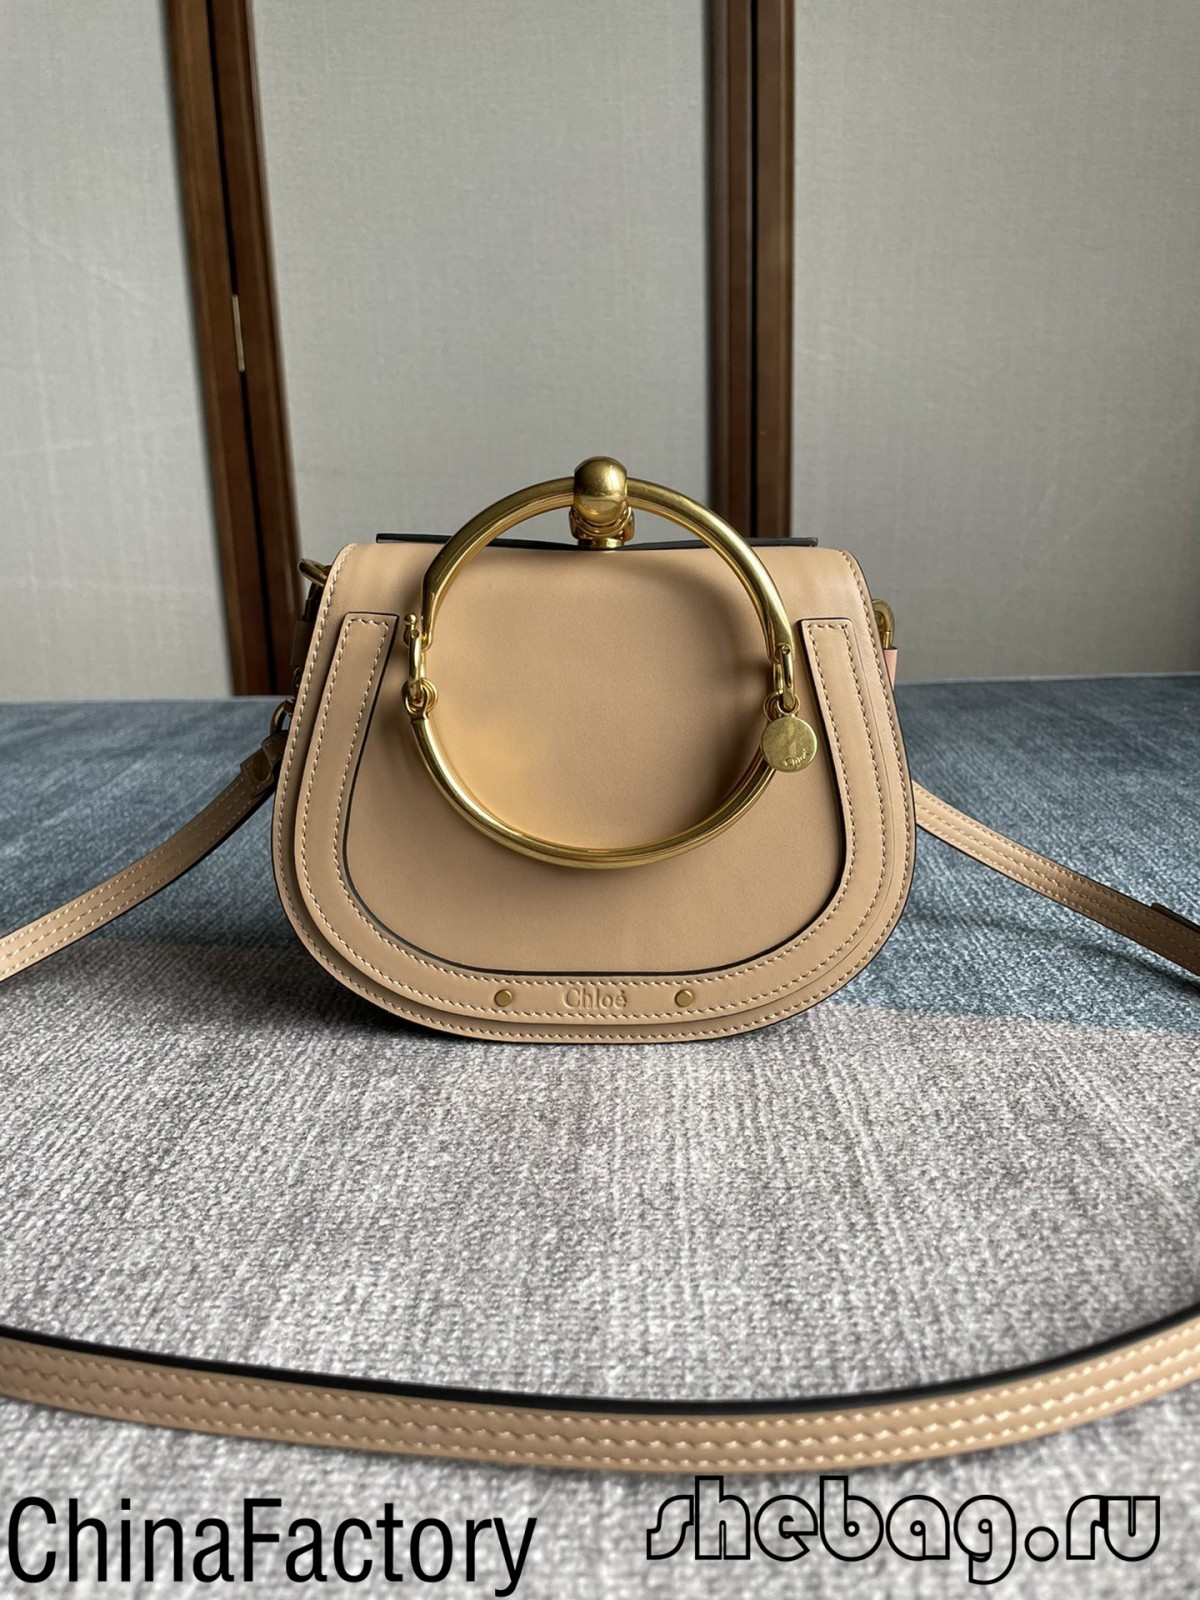 Tovarna replik vrečk Chloe Nile najboljše kakovosti na Kitajskem (najbolj vroča 2022)-Best Quality Fake Louis Vuitton Bag Online Store, Replica designer bag ru